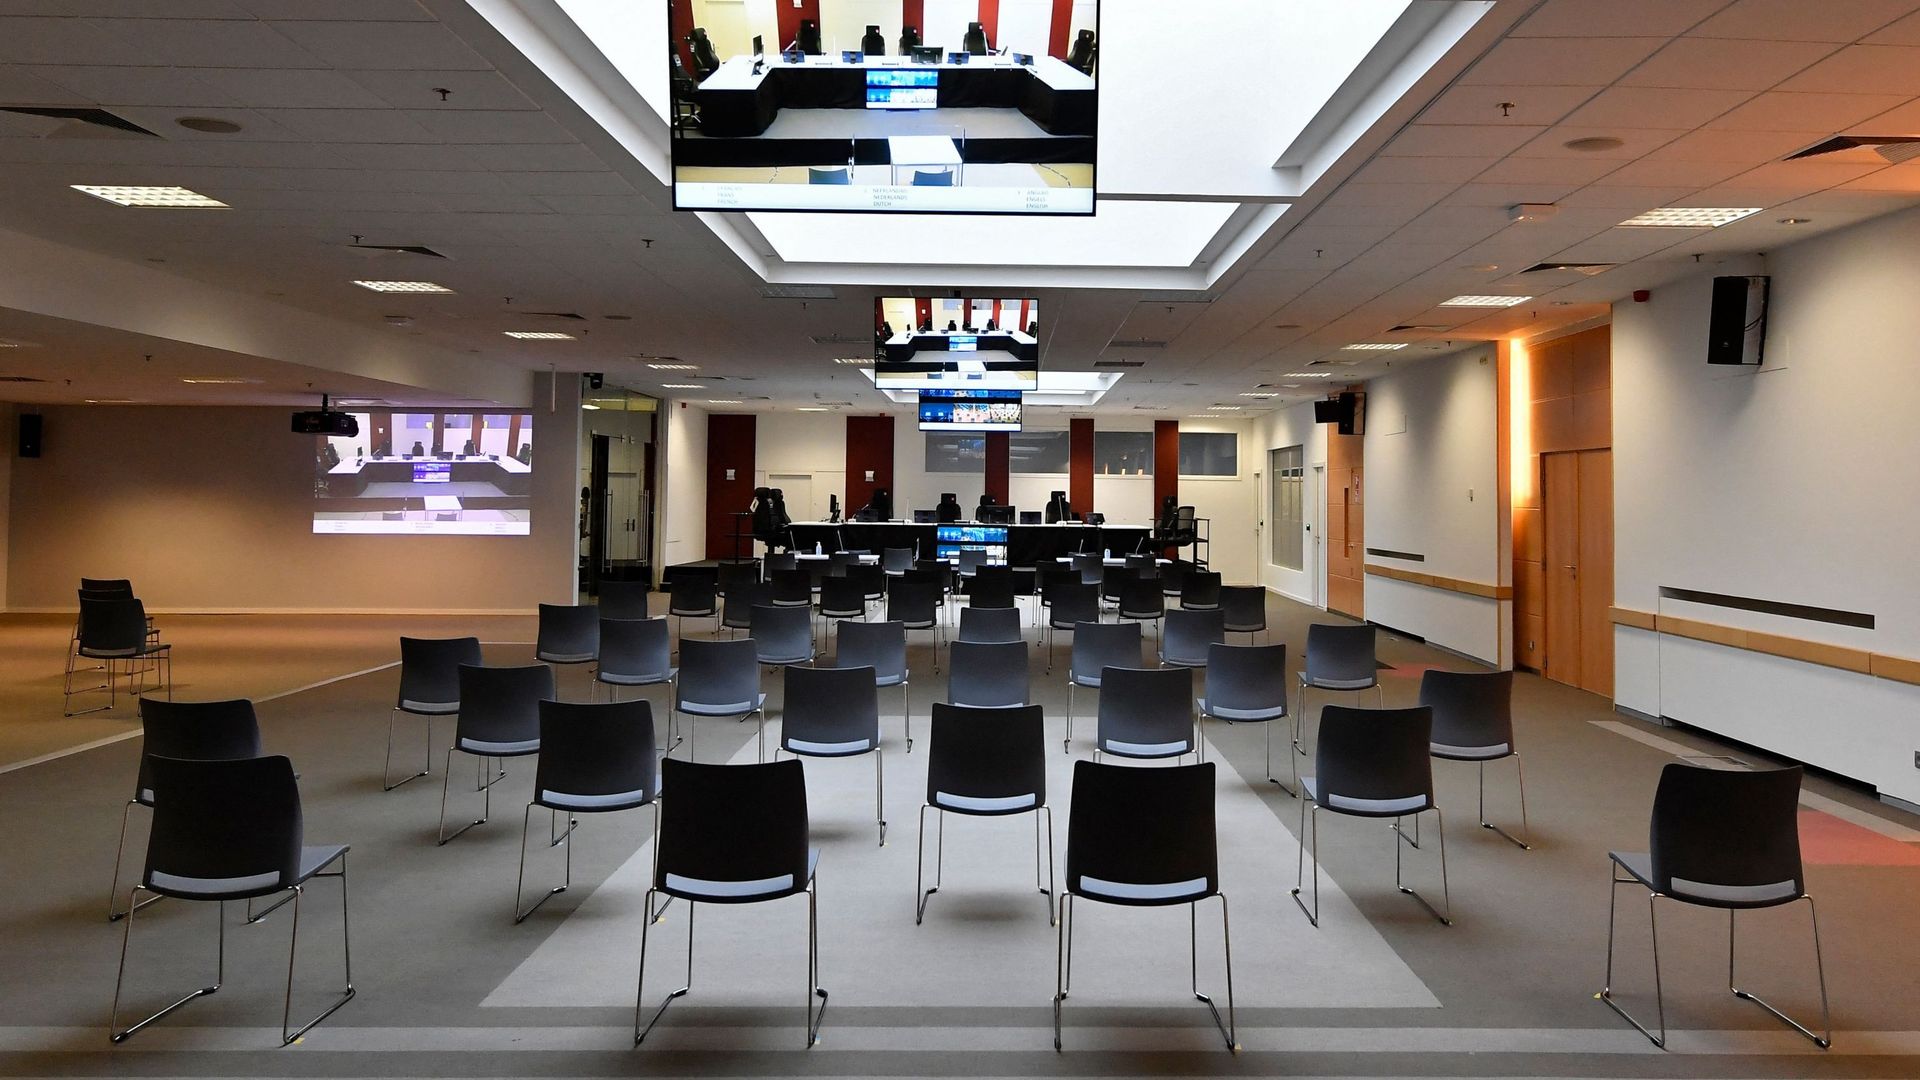 Vue générale de la salle du Conseil de l'ancien siège de l'OTAN convertie en un nouveau tribunal belge avant le procès des attentats terroristes du 22 mars 2016.